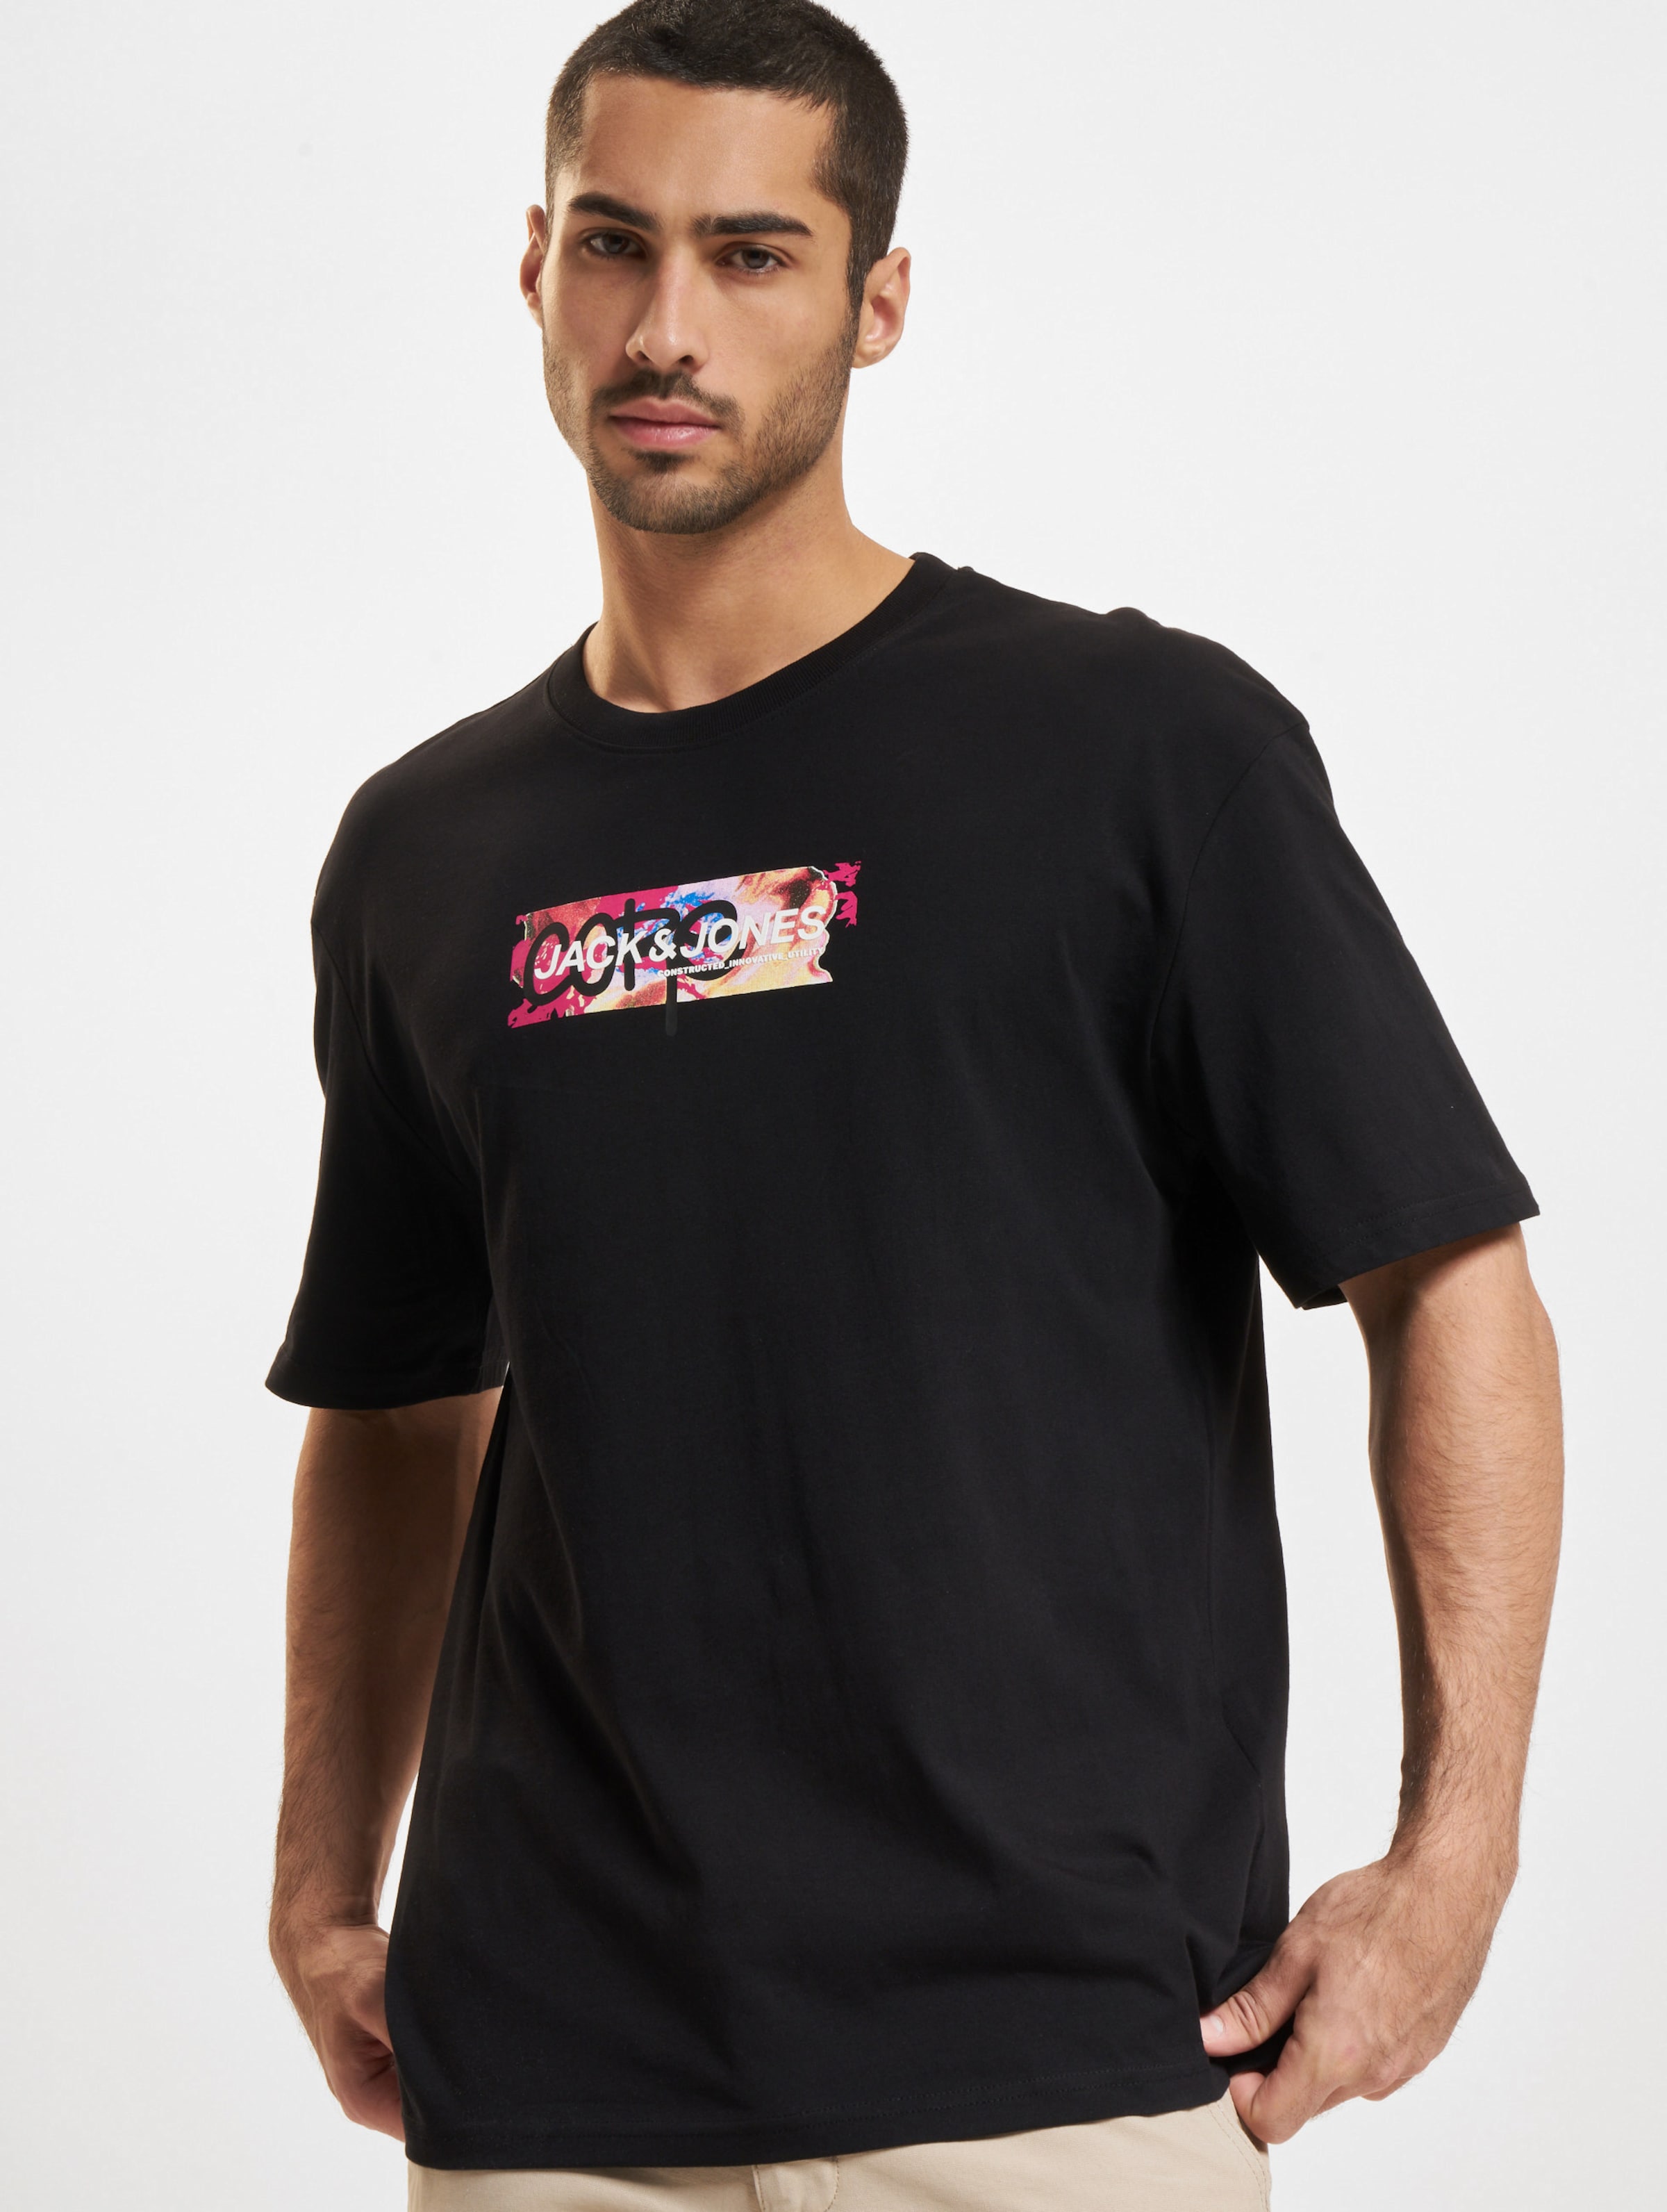 Jack & Jones Summer Print Crew Neck T-Shirts Männer,Unisex op kleur zwart, Maat L